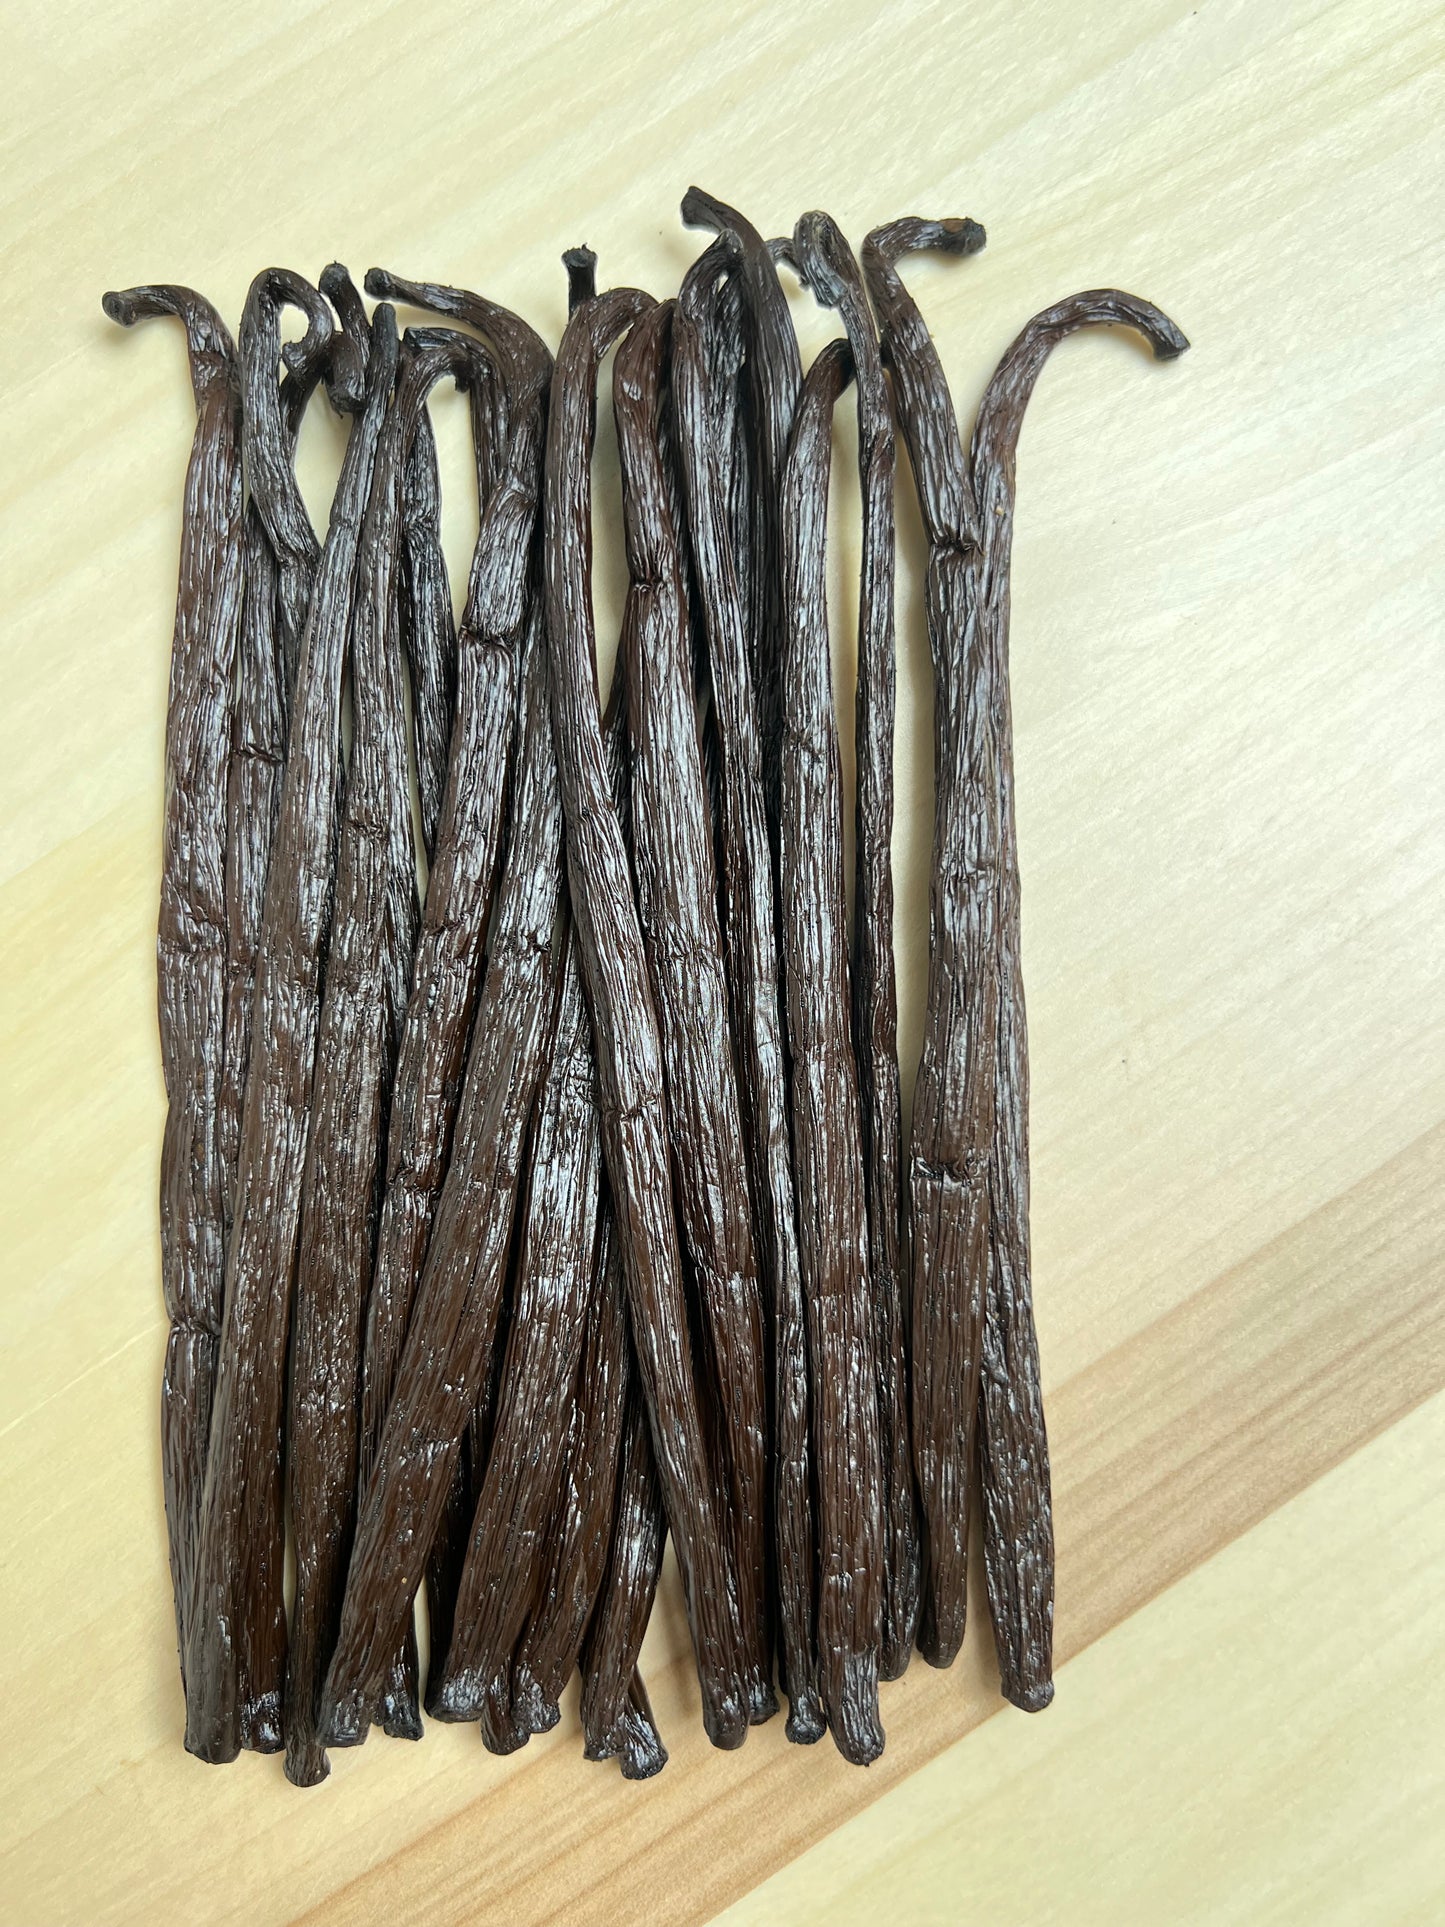 50g de gousses de Vanille Bourbon qualité Gourmet de Madagascar